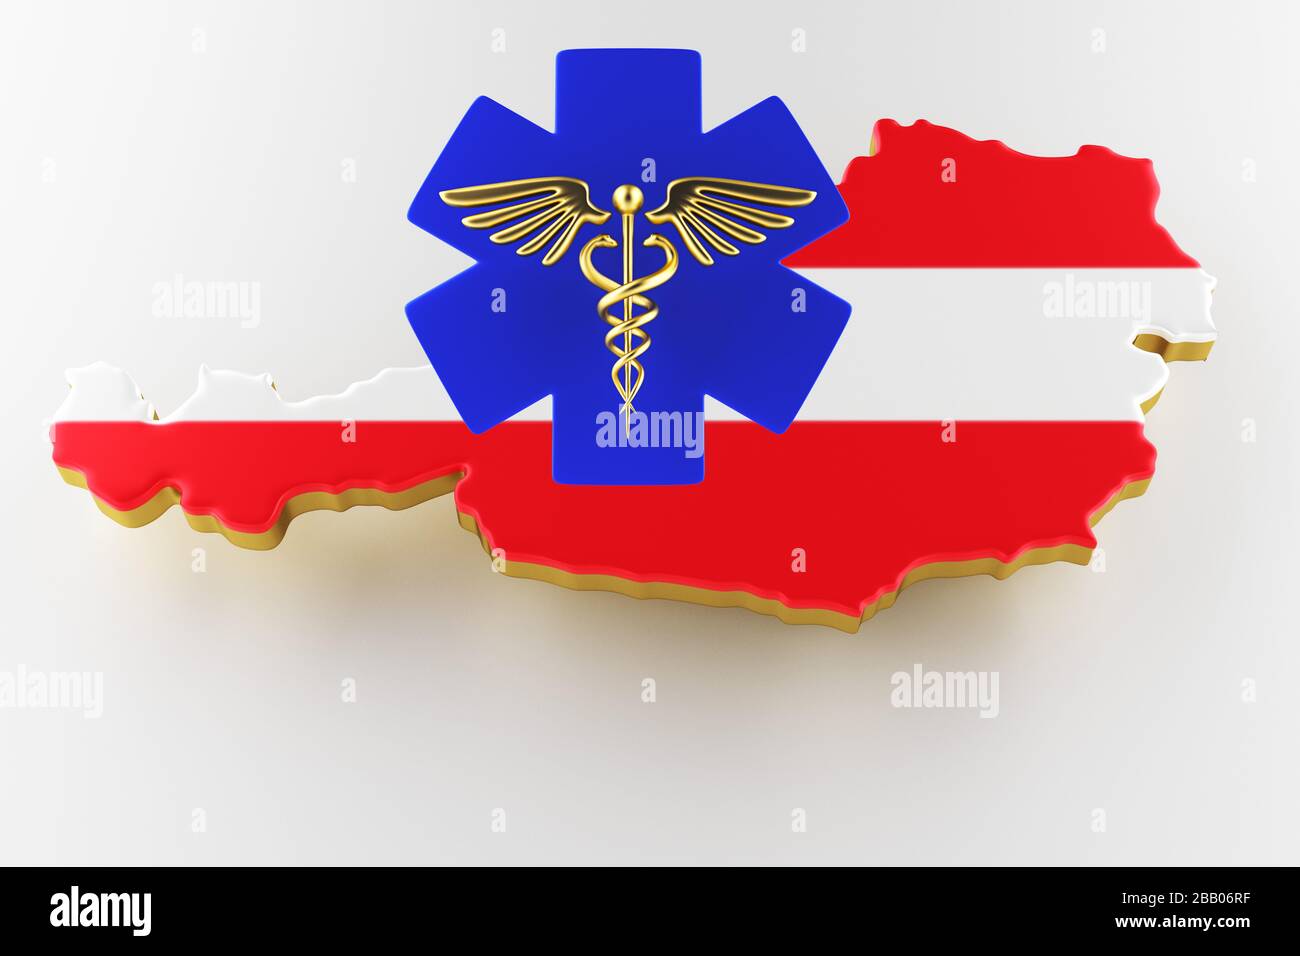 Caduceus Schild mit Schlangen auf einem medizinischen Stern. Karte von Österreich Landgrenze mit Flagge. Österreich Karte auf weißem Hintergrund. 3D-Rendering Stockfoto